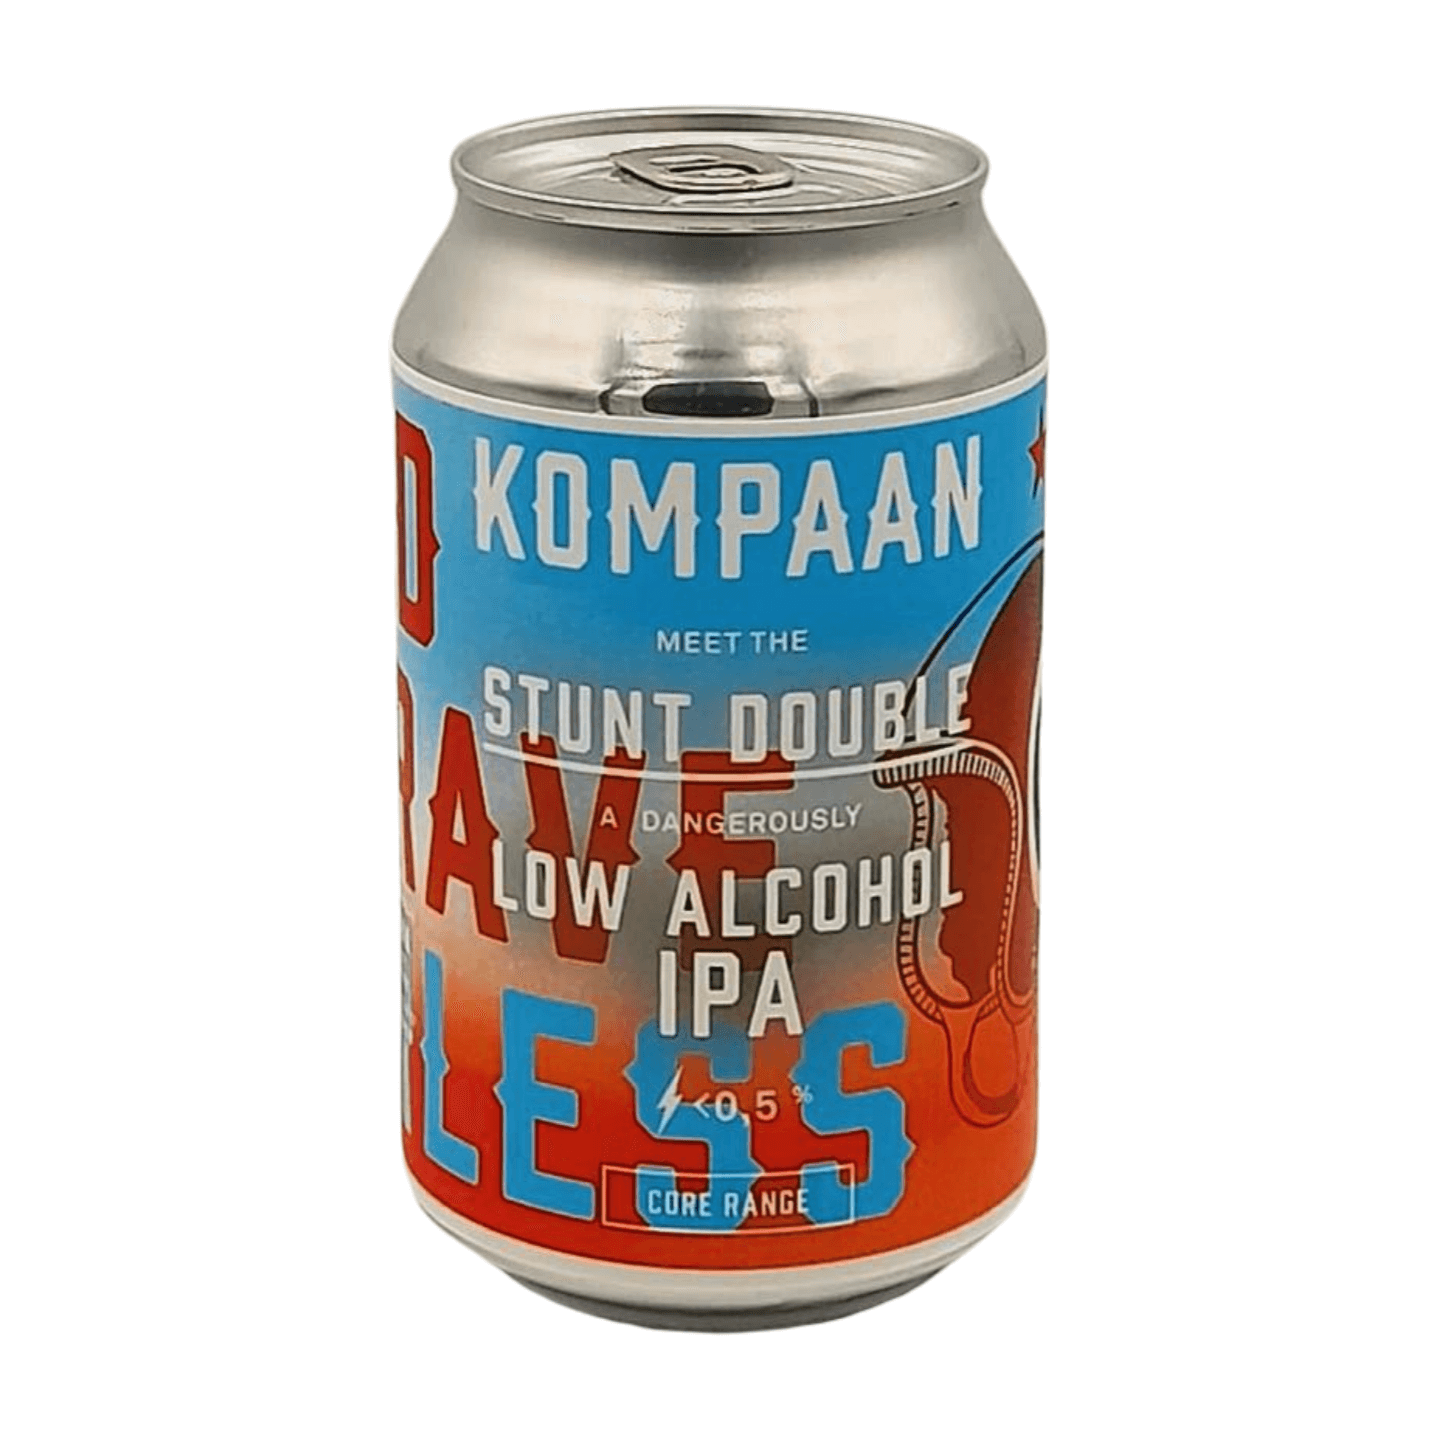 Kompaan Stunt Double | Low Alcohol IPA Webshop Online Verdins Bierwinkel Rotterdam